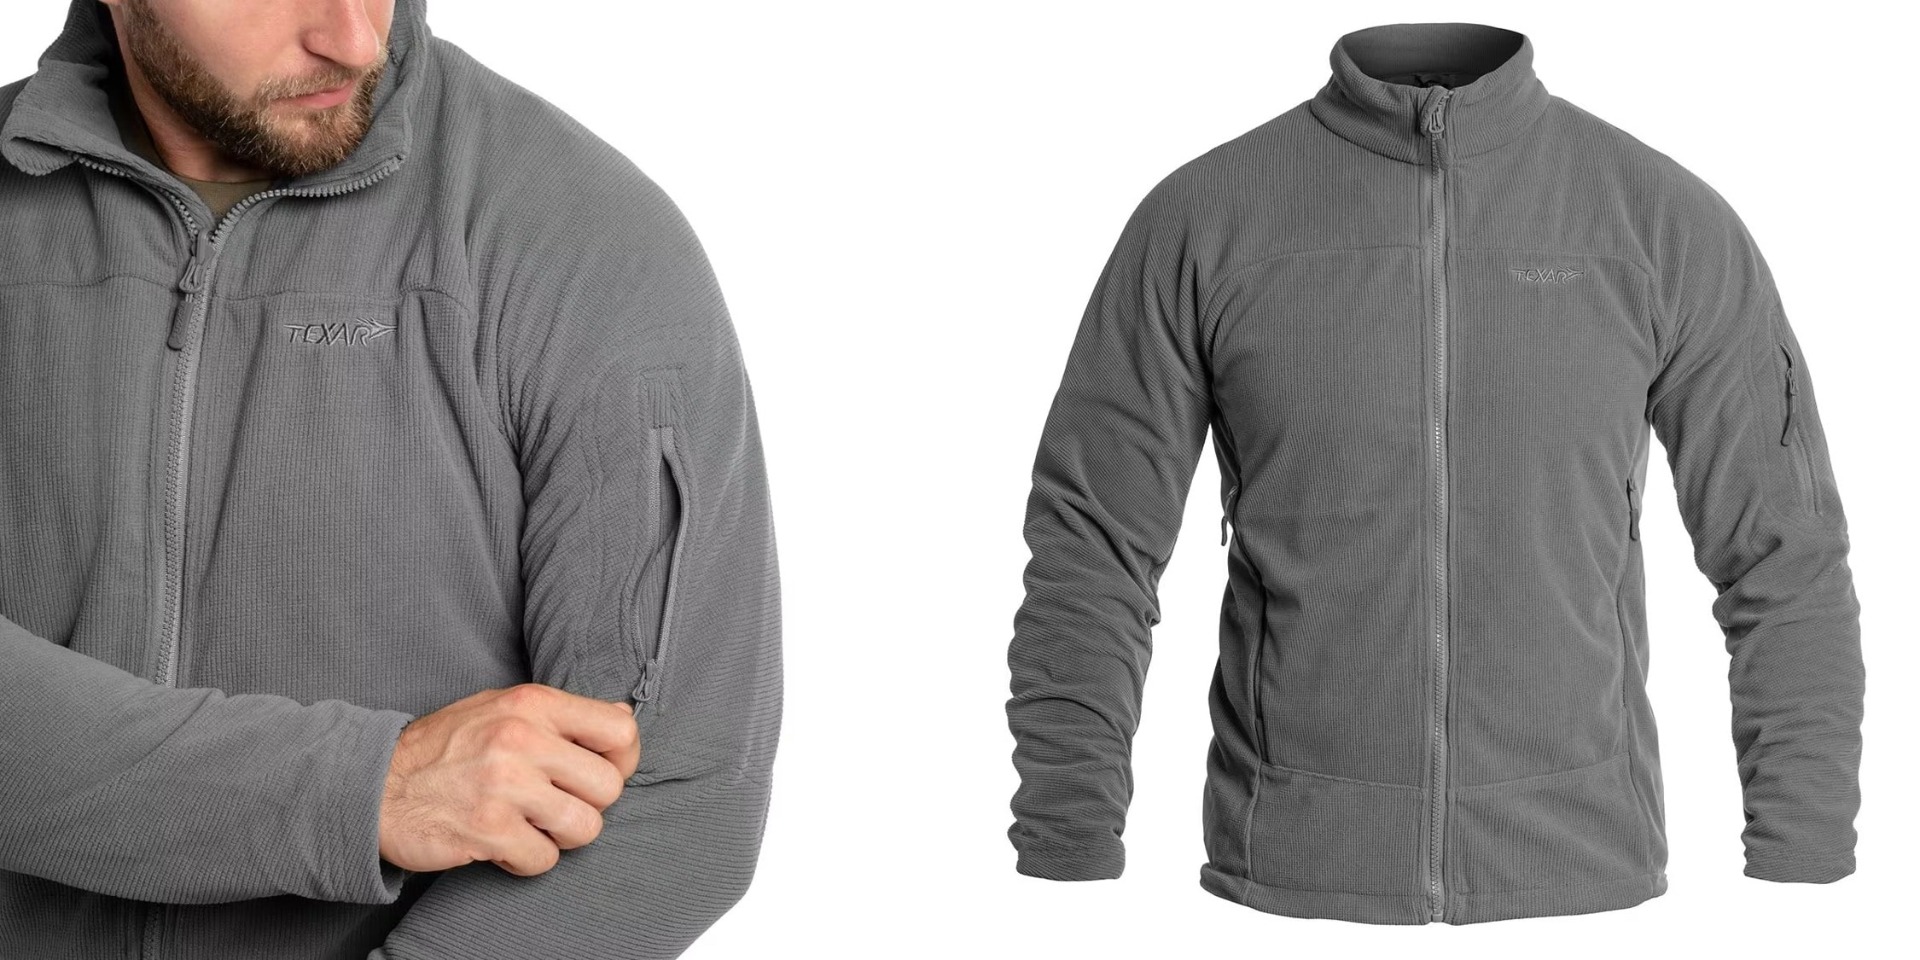 Odkrijte vrhunsko flis jakno Texar Conger Siva - idealno taktično oblačilo za zaščito in udobje v vseh vremenskih razmerah. Vzdržljiva, funkcionalna in kakovostna jakna za pripadnike varnostnih služb, pohodnike in rekreativce. Zagotovite si svoj primerek 